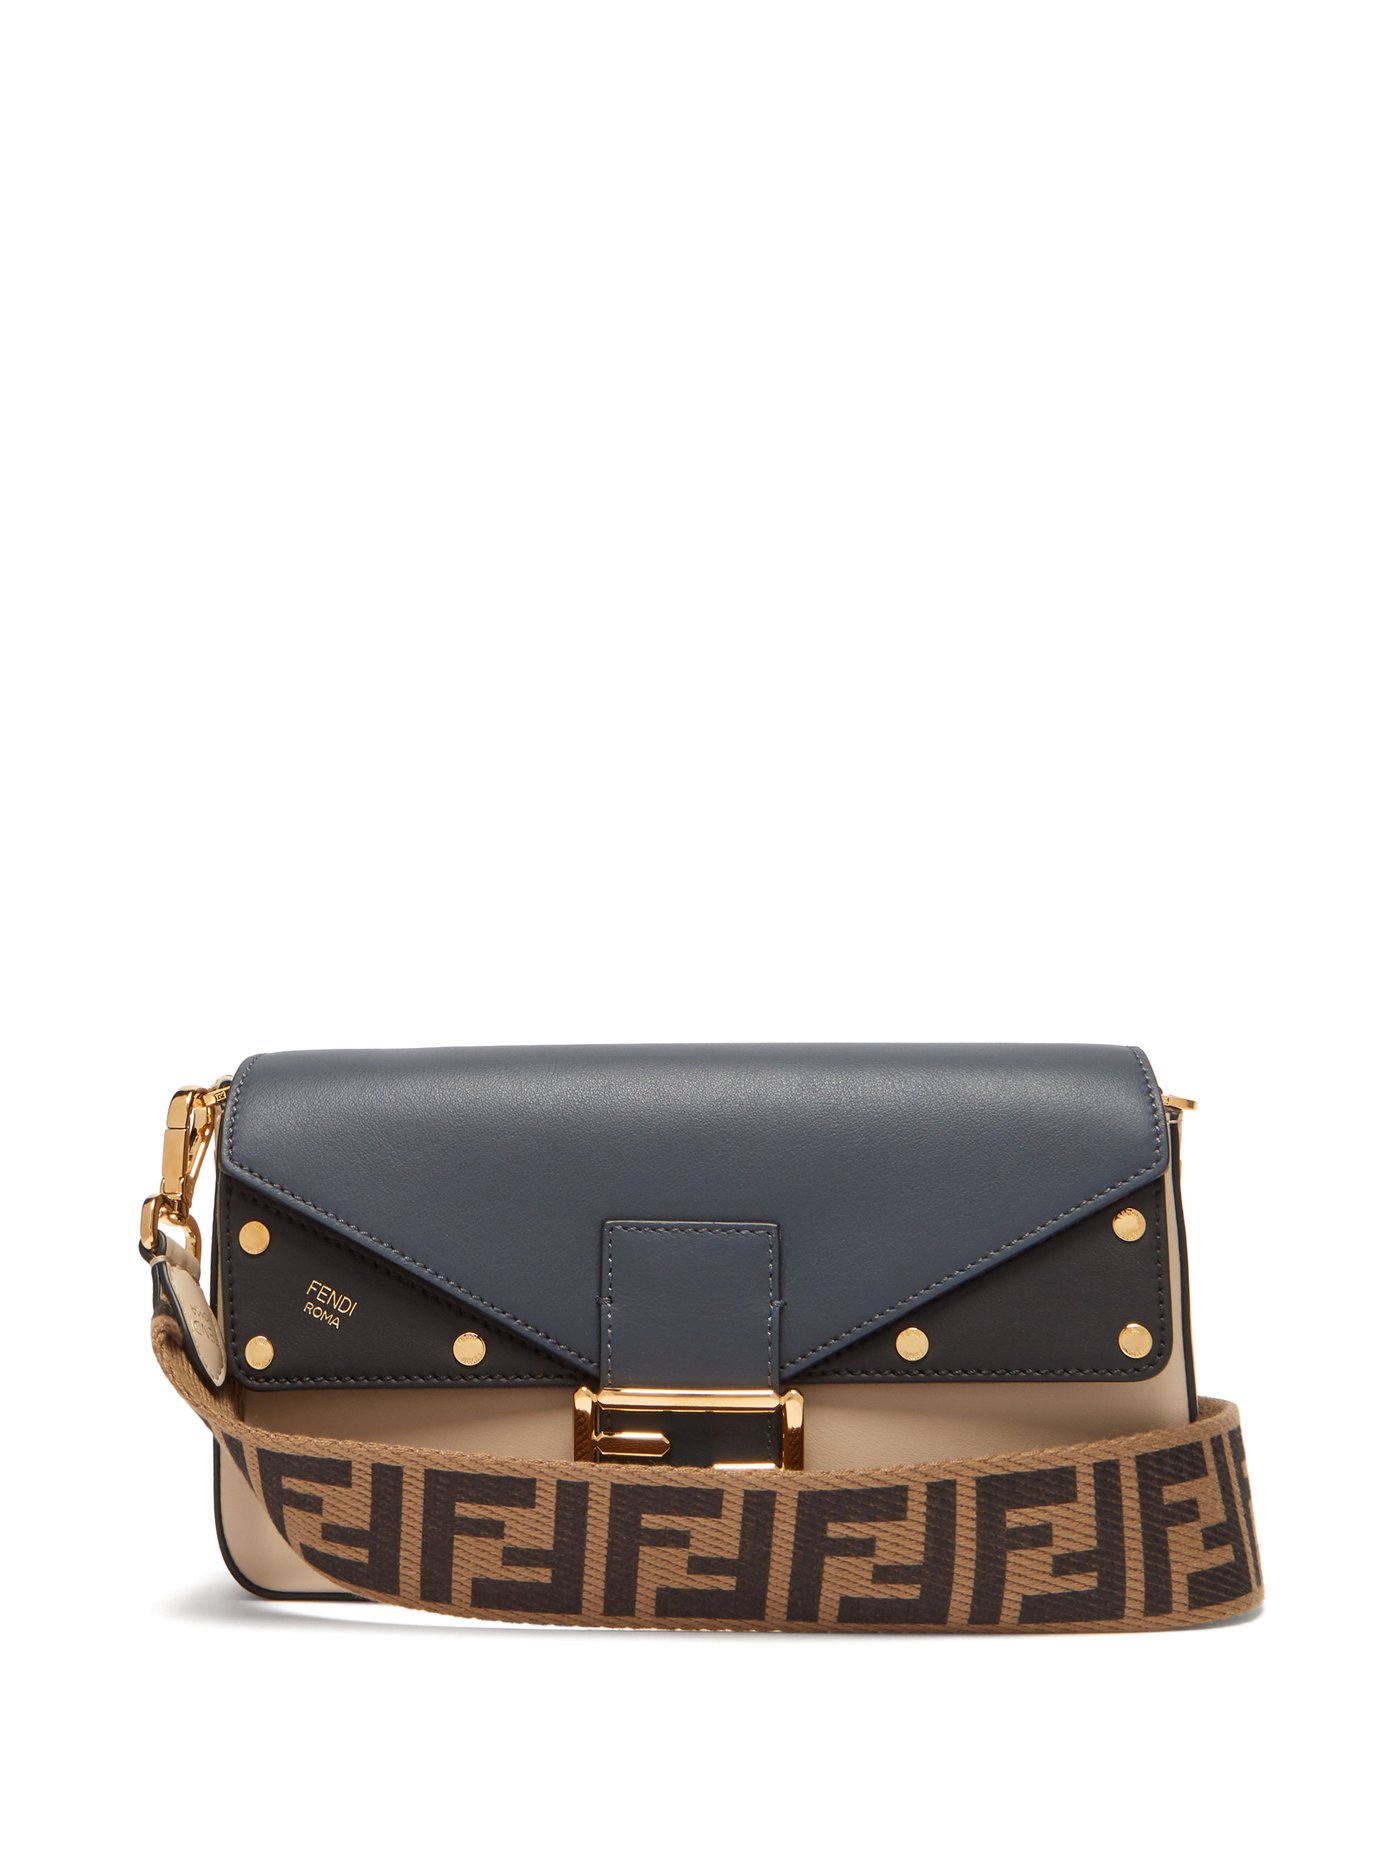 Baguette tri-colour leather bag | Fendi 